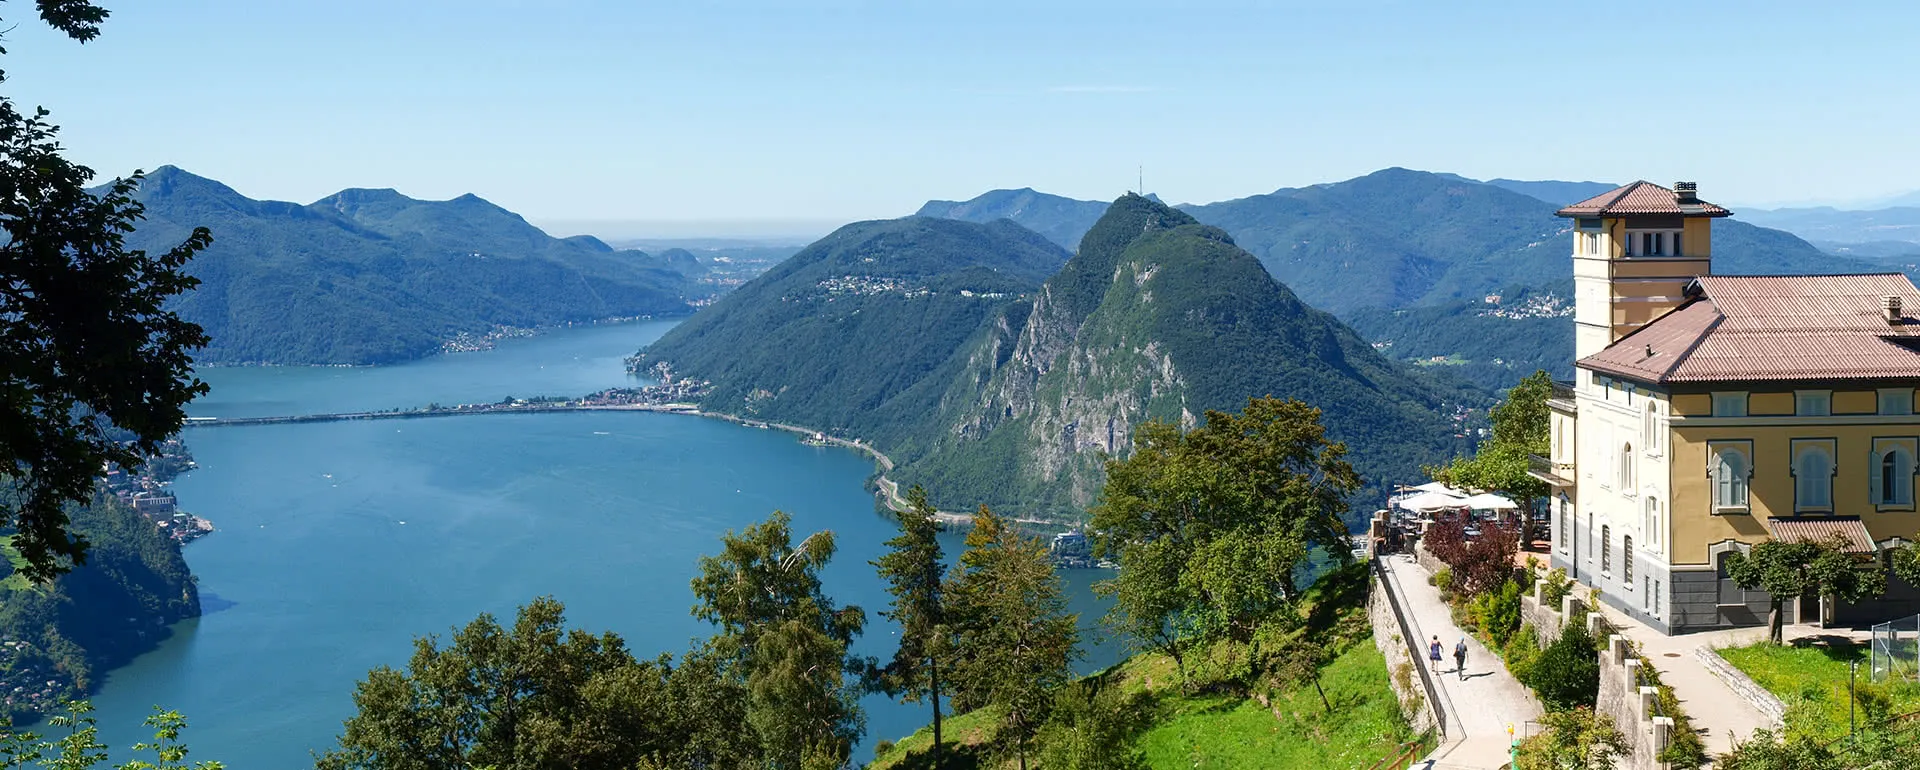 Lugano - the destination for company trips